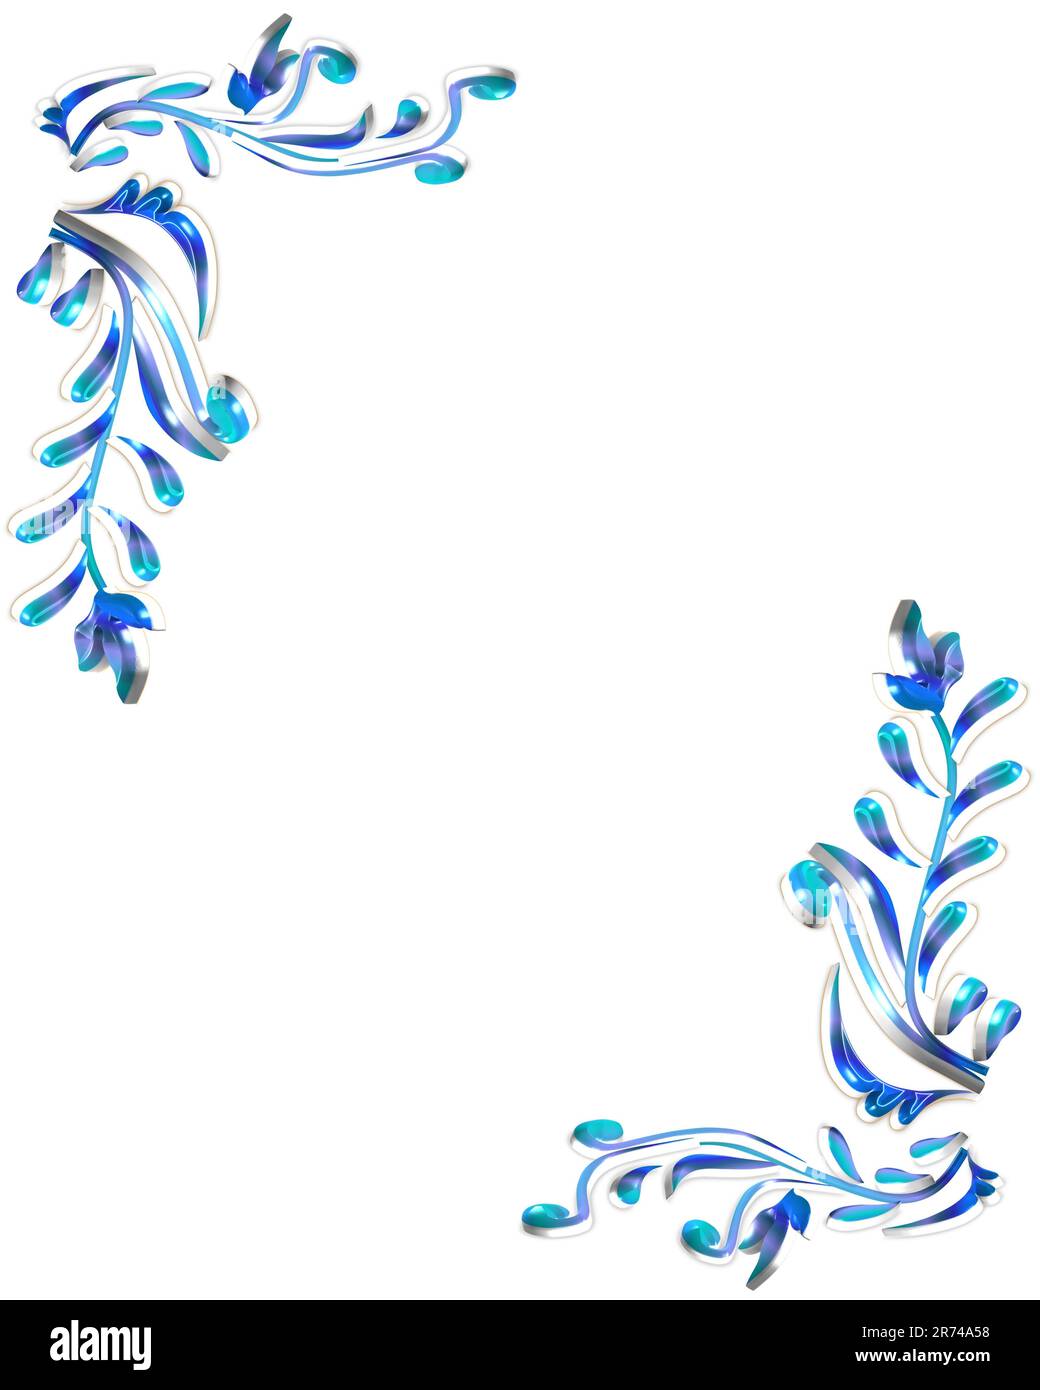 blue flower corner border